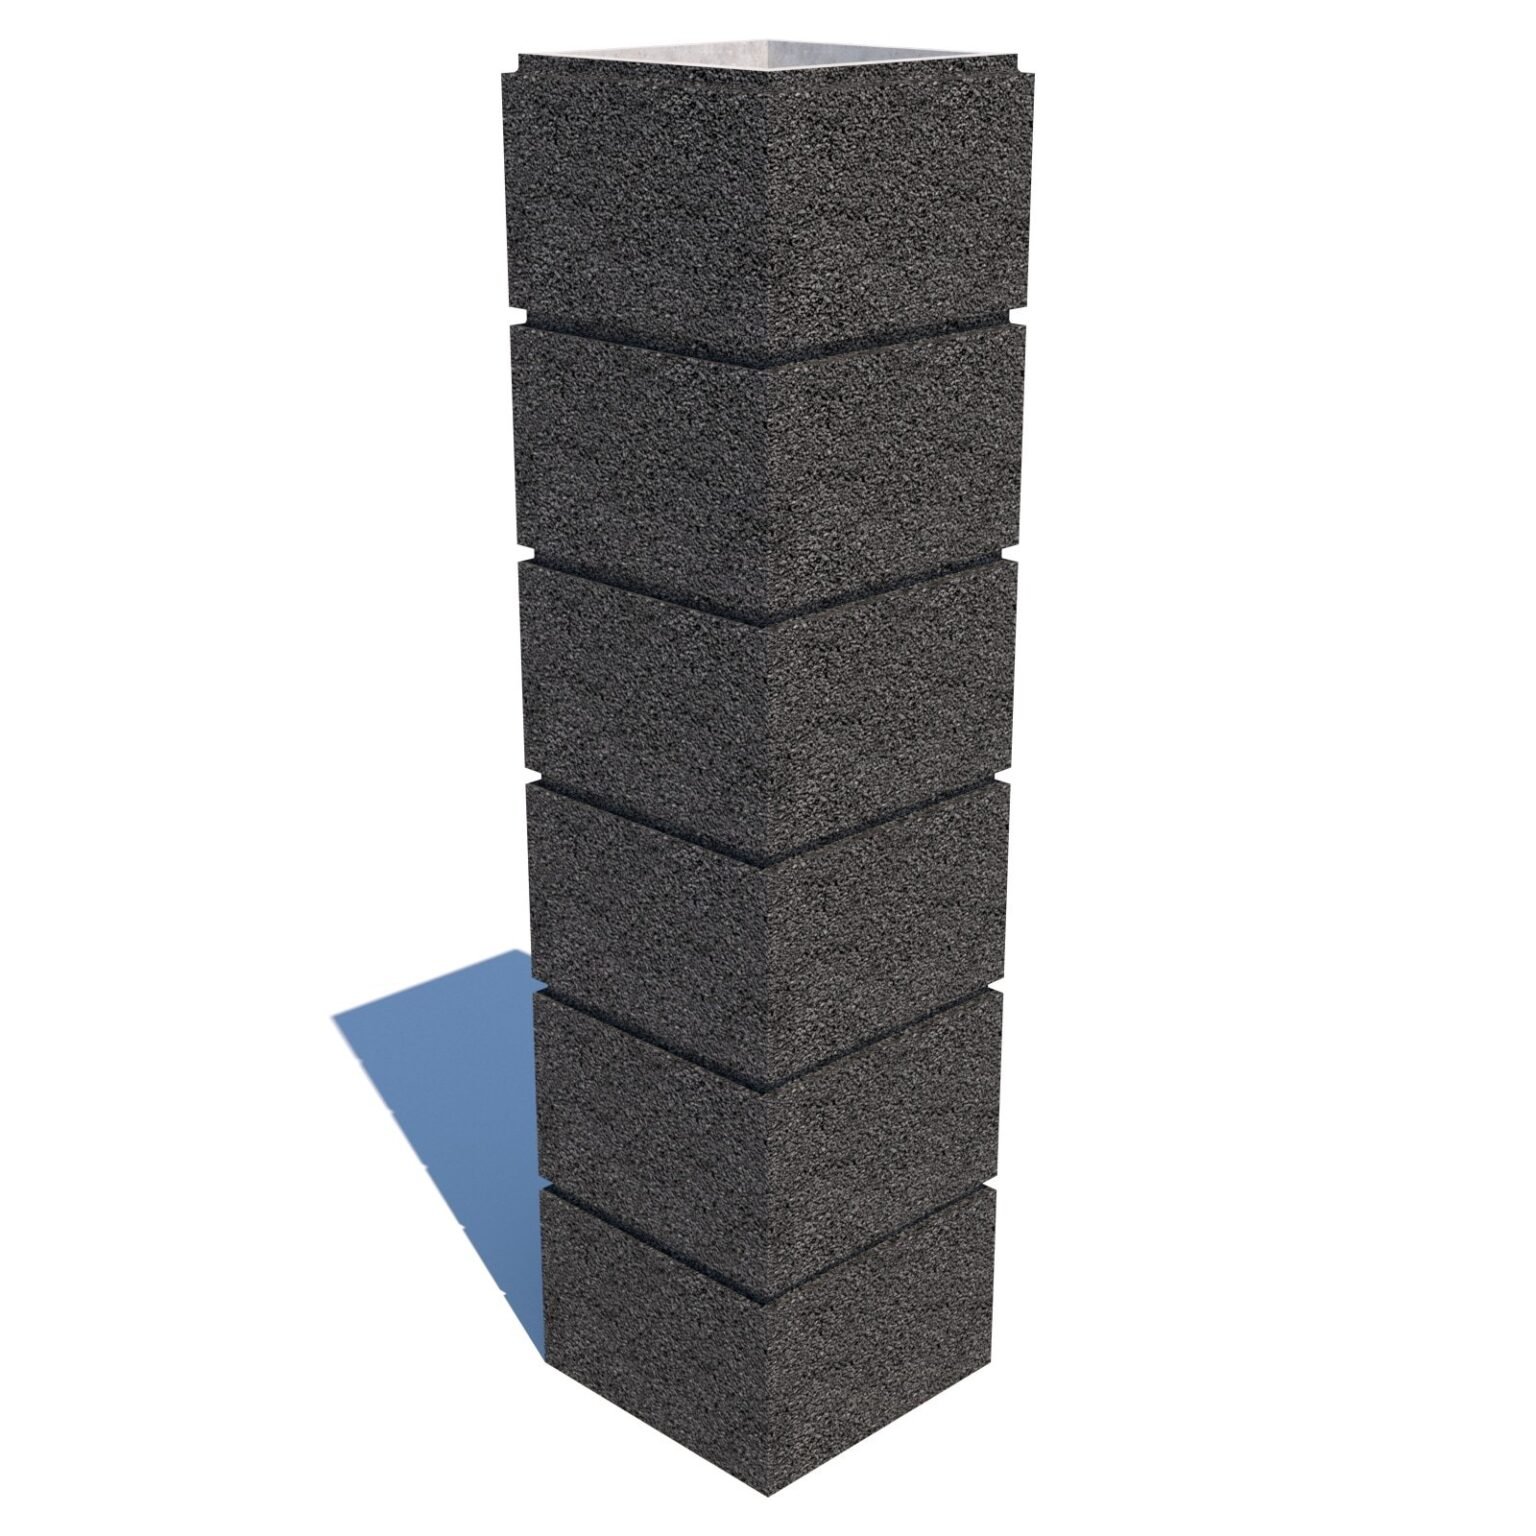 Подбираем правильно бетонные блоки для строительства ограждения